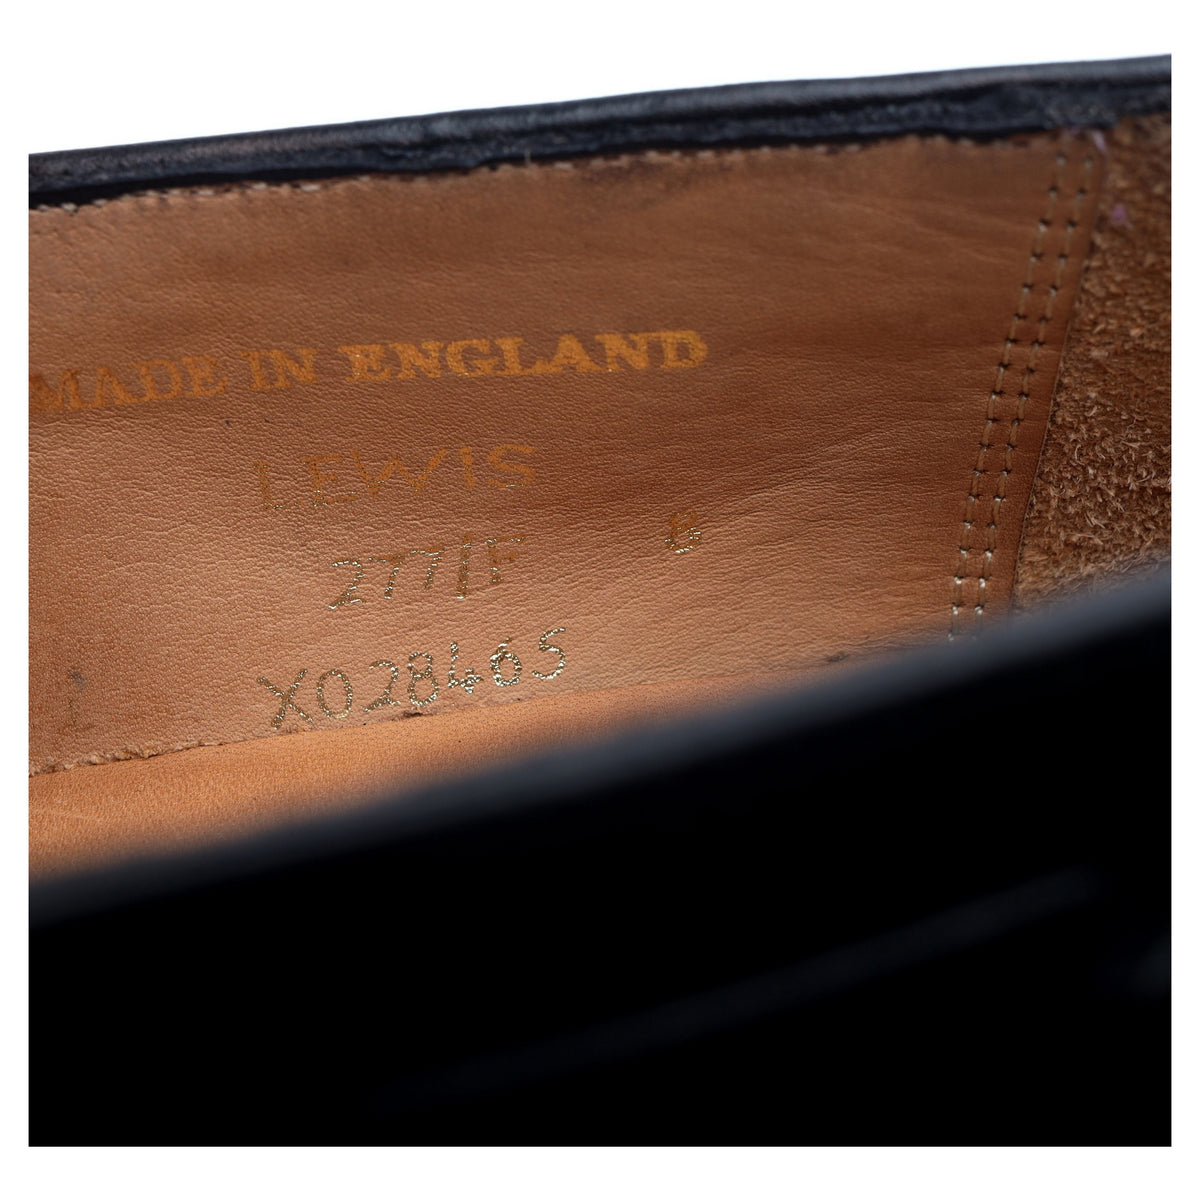 &#39;Lewis&#39; Black Leather Tassel Loafers UK 8 F